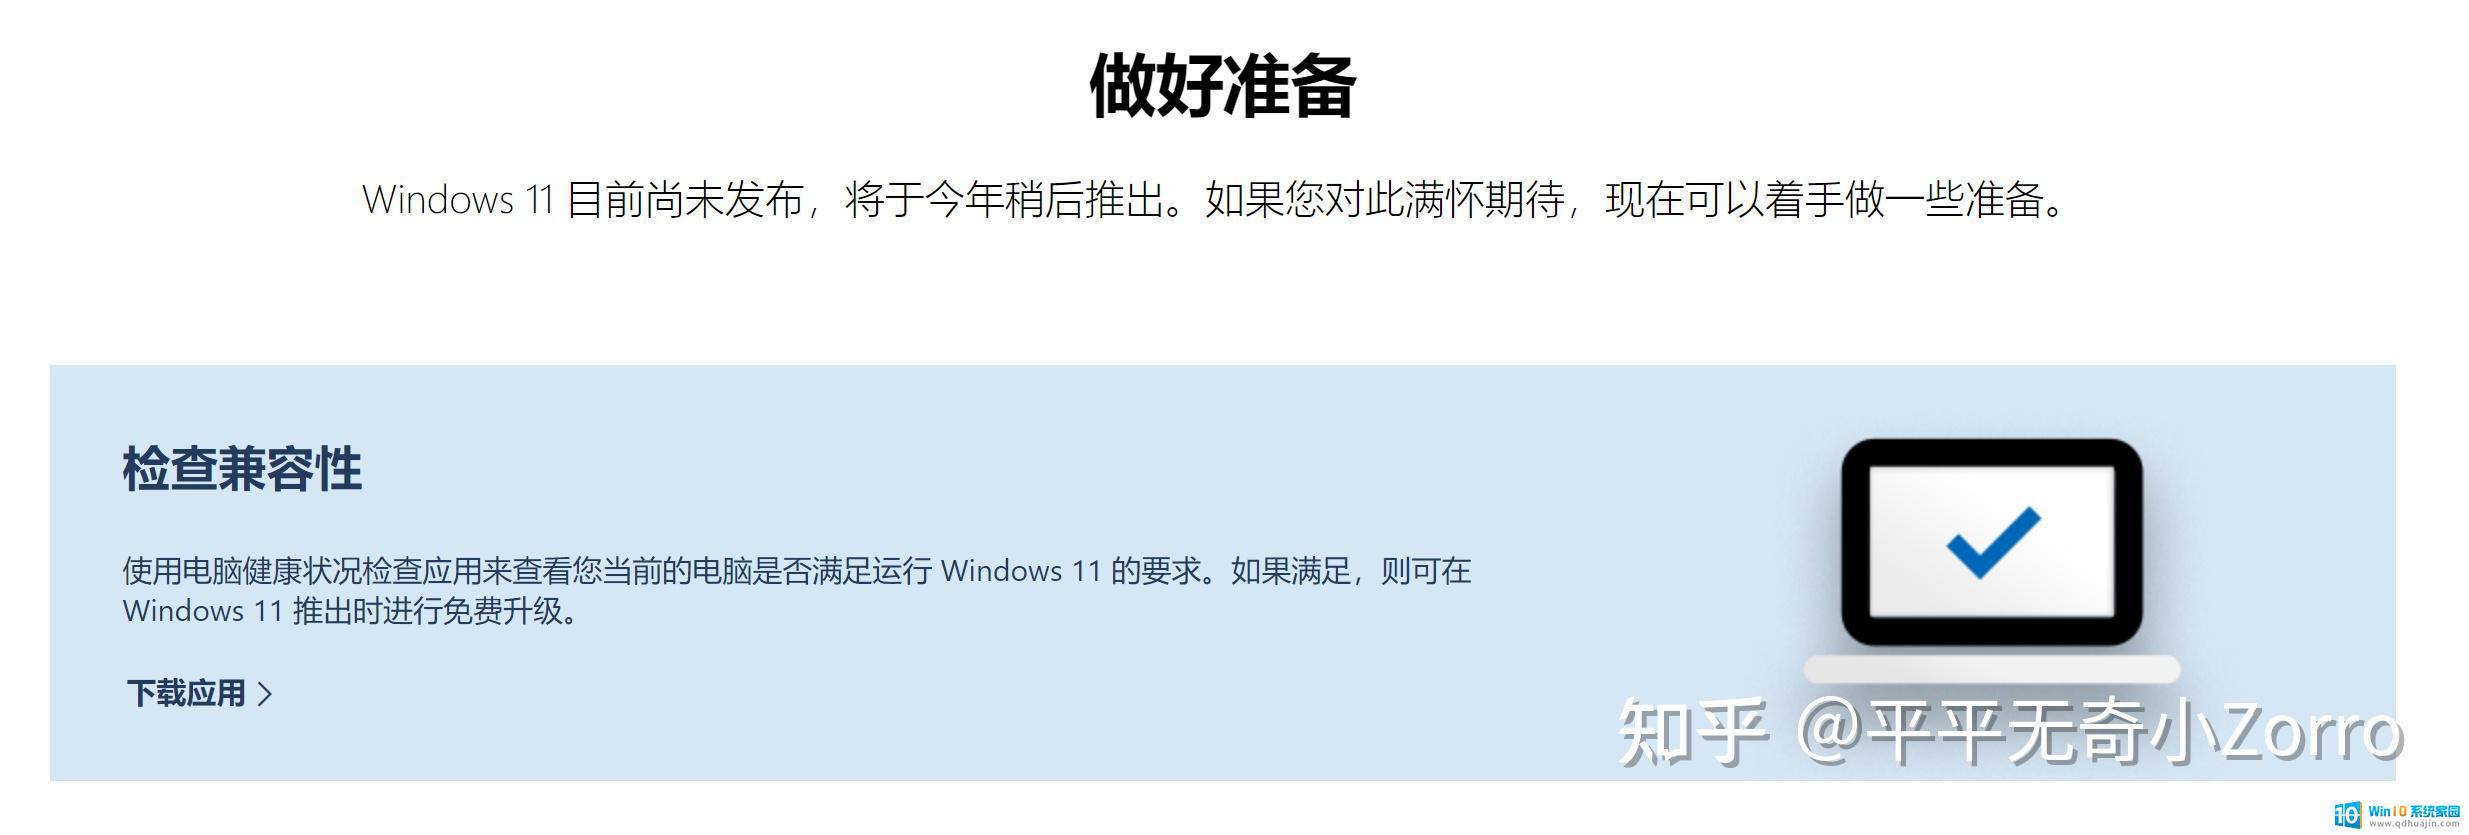 i713700k不能用win11? 如何查看我的电脑是否符合Windows 11系统要求